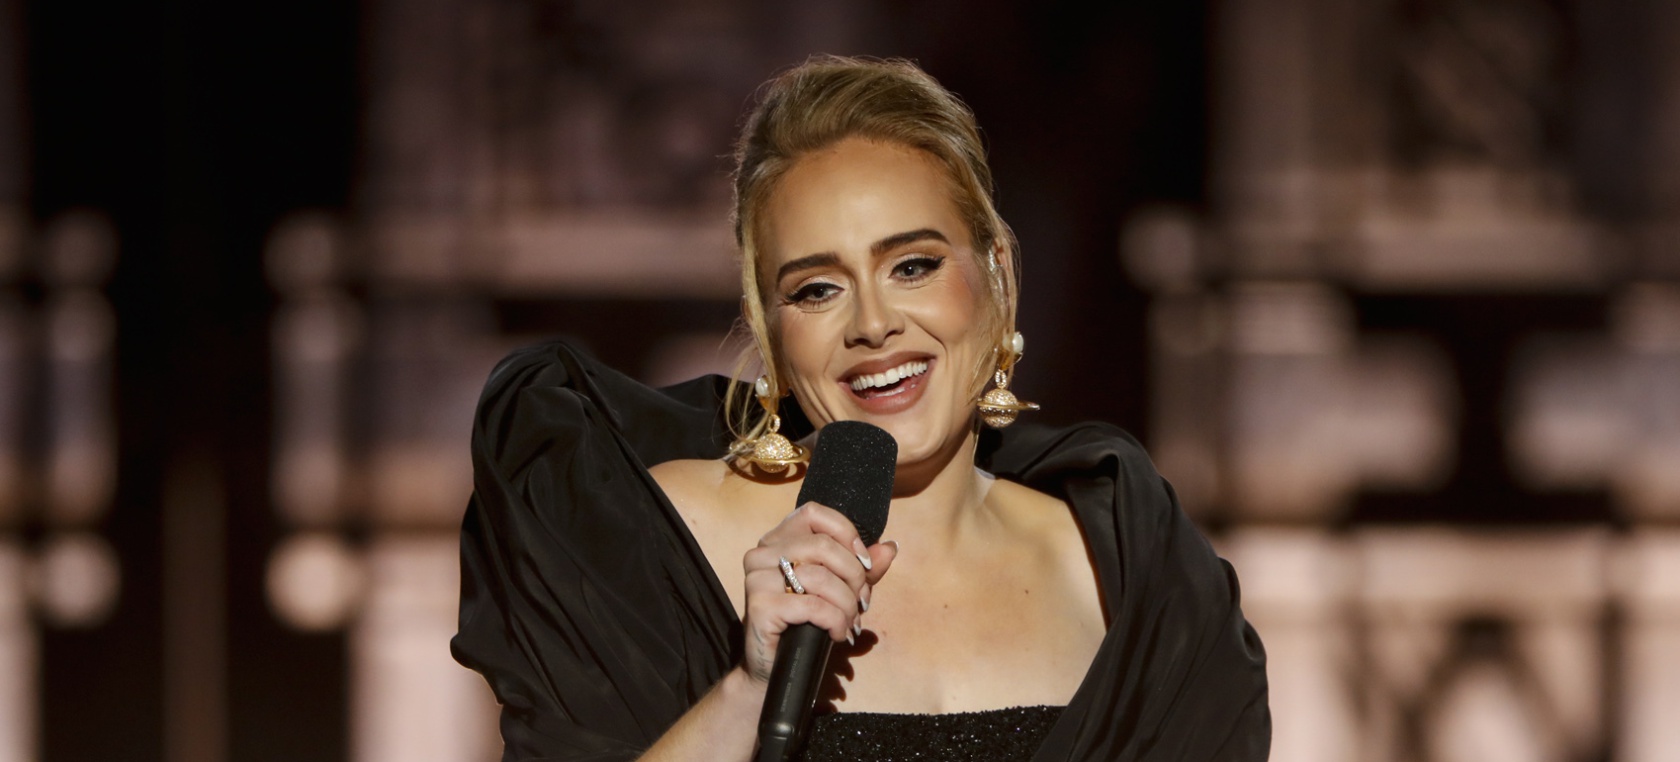 El especial de Adele en la CBS se verá en Televisión Española